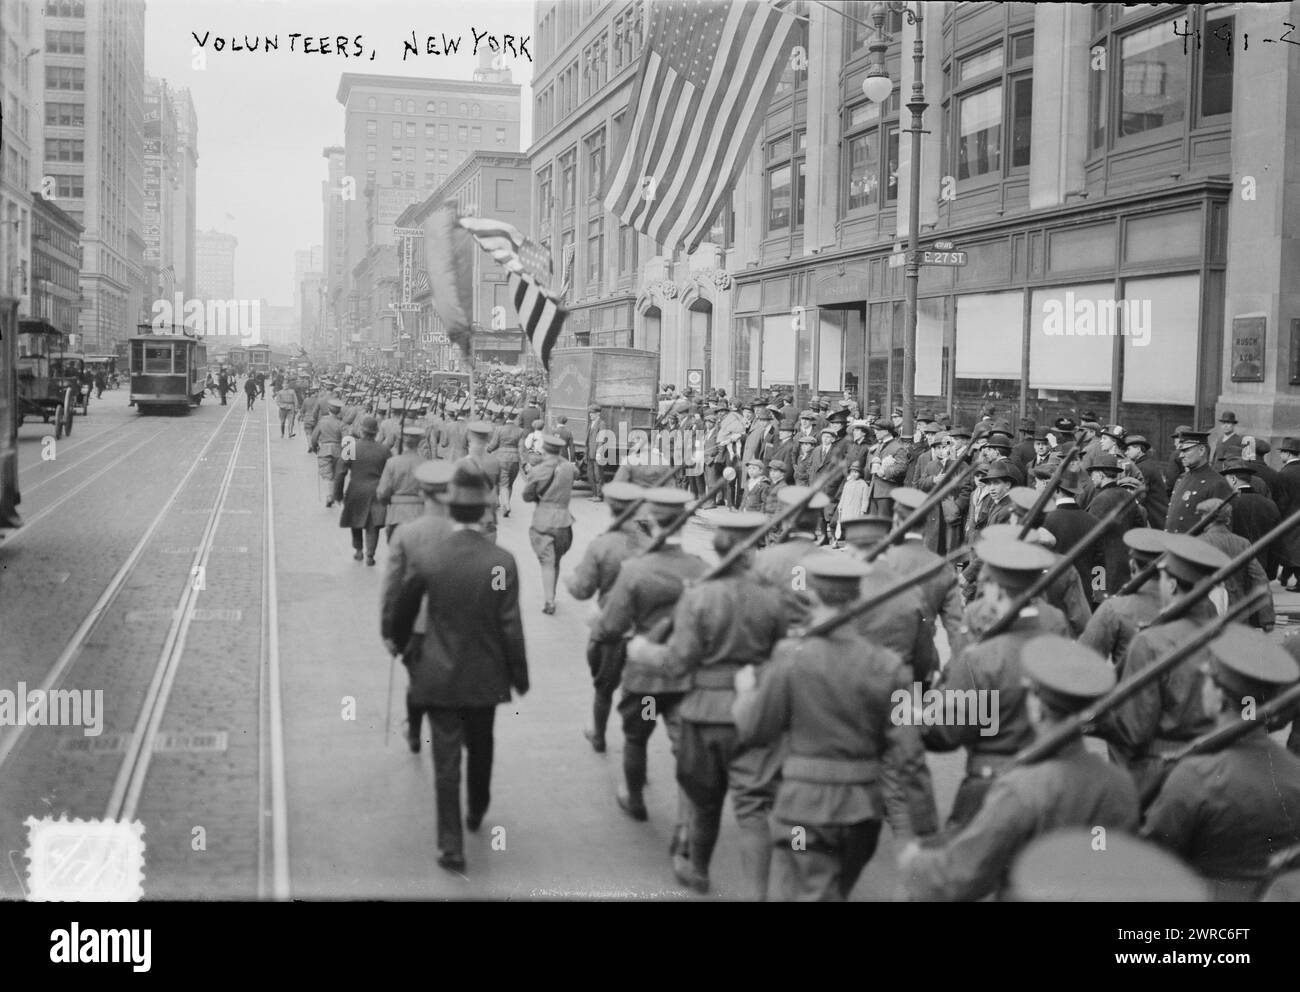 Volunteers, New York, photographie montrant des soldats volontaires pendant la première Guerre mondiale, New York City., 1917 et 1918, Guerre mondiale, 1914-1918, négatifs en verre, 1 négatif : verre Banque D'Images